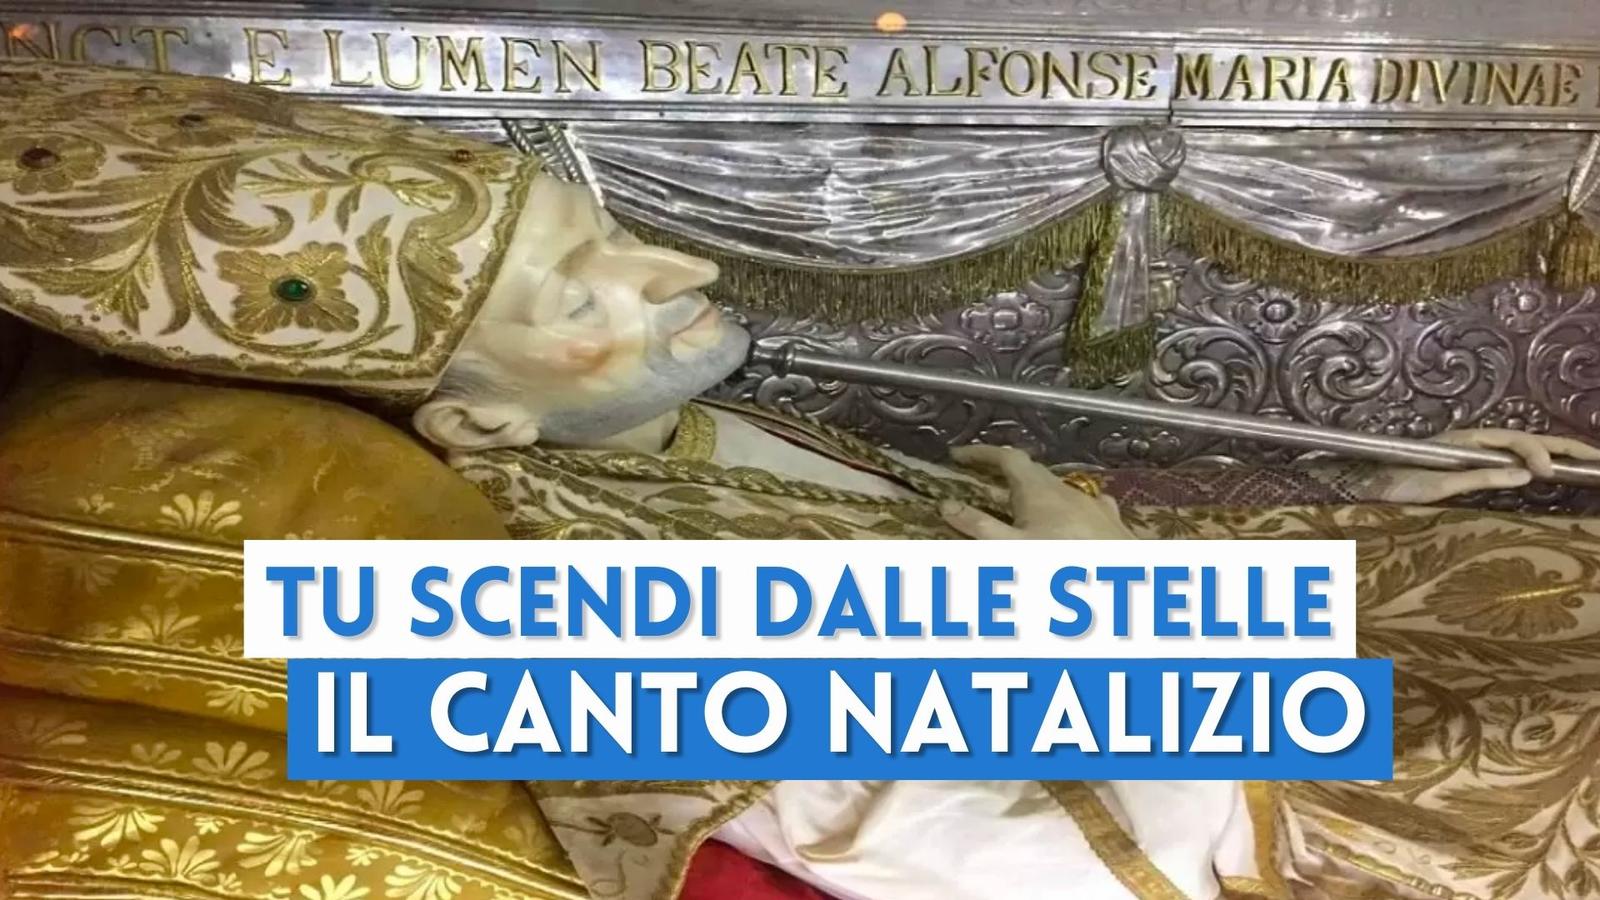 "Tu scendi dalle stelle": storia del canto simbolo del Natale napoletano